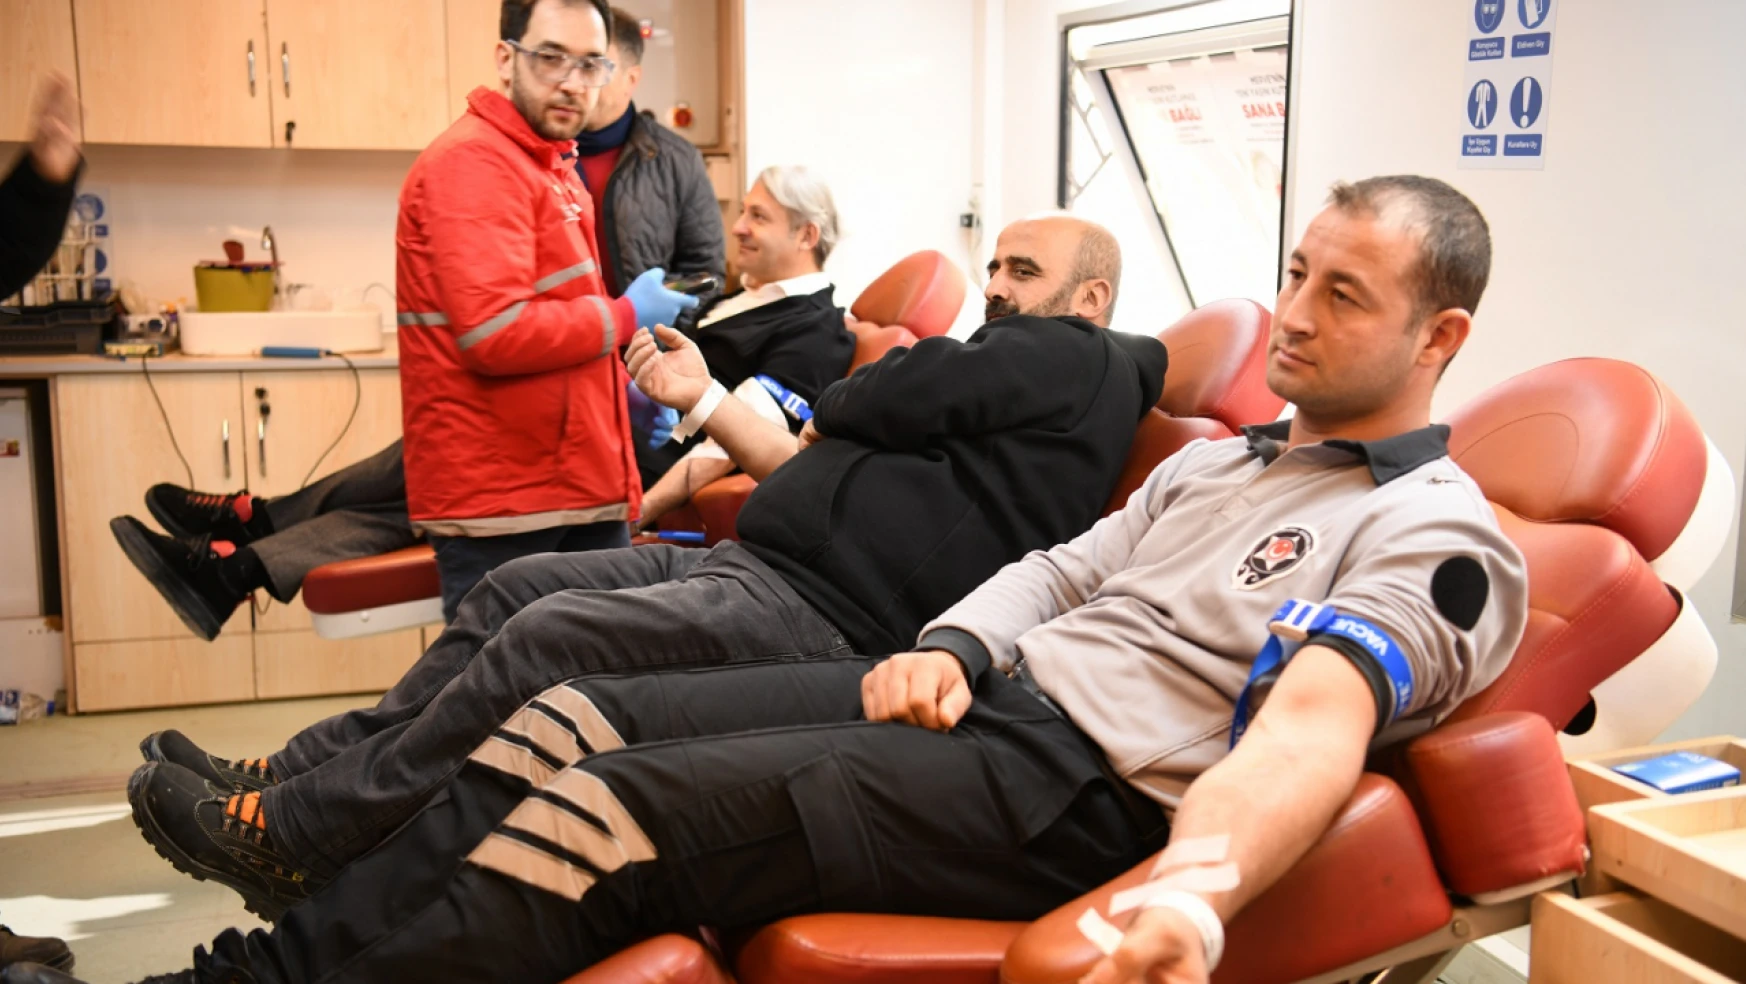 Yeşilyurt Belediye Personelleri Kan Bağışında Bulundu